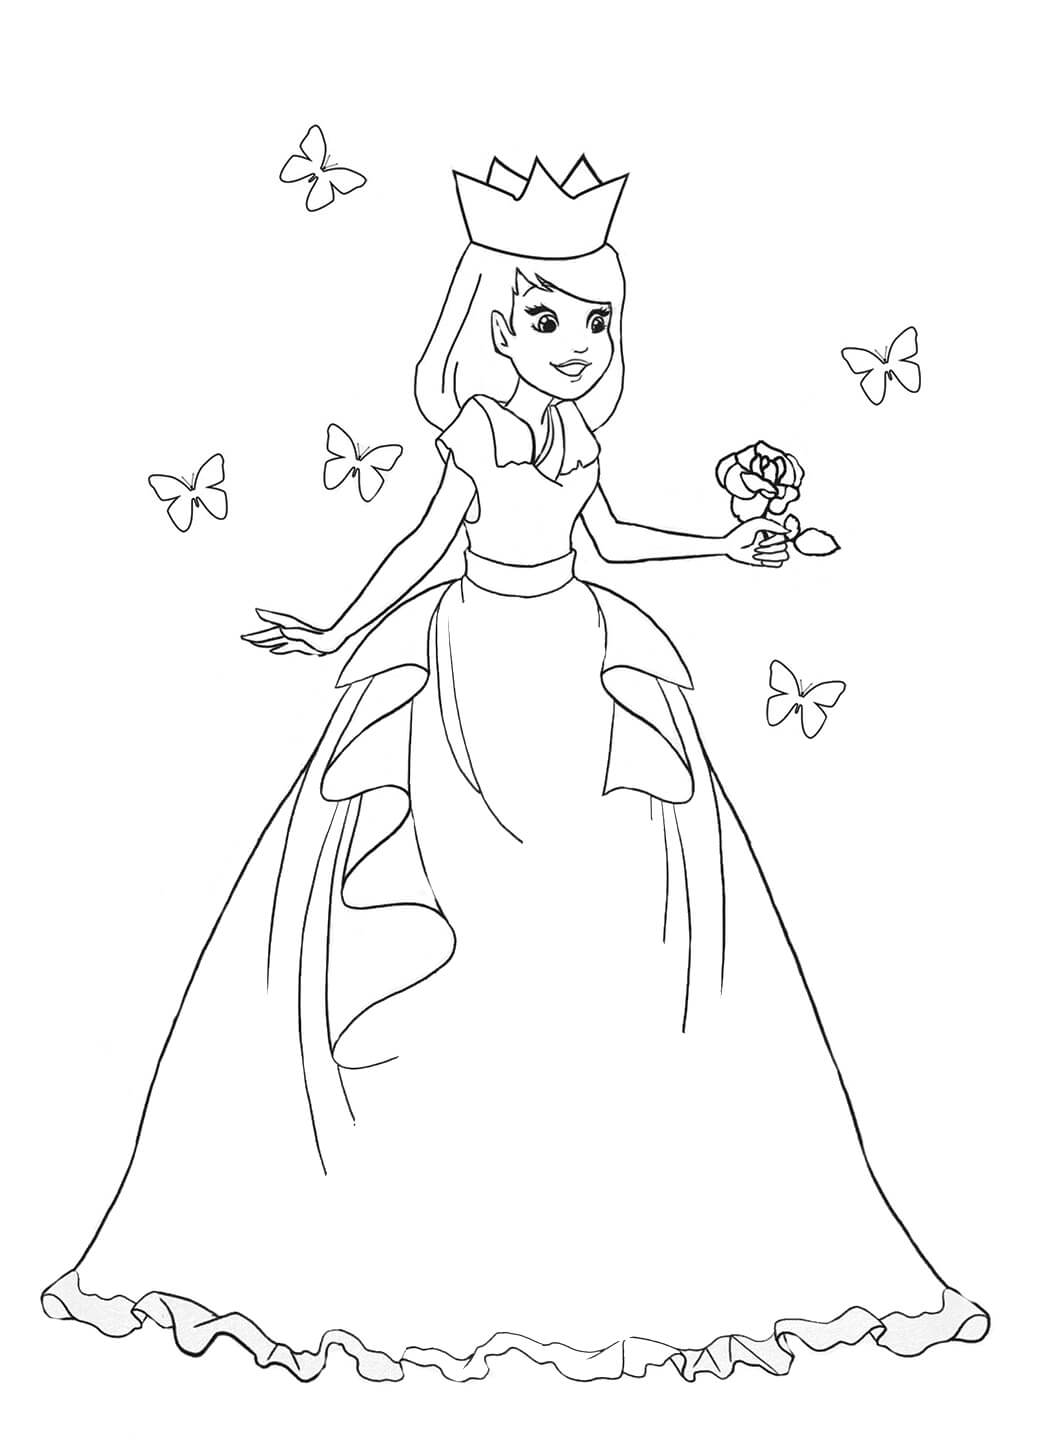 Prinses houdt bloem met vlinders vast